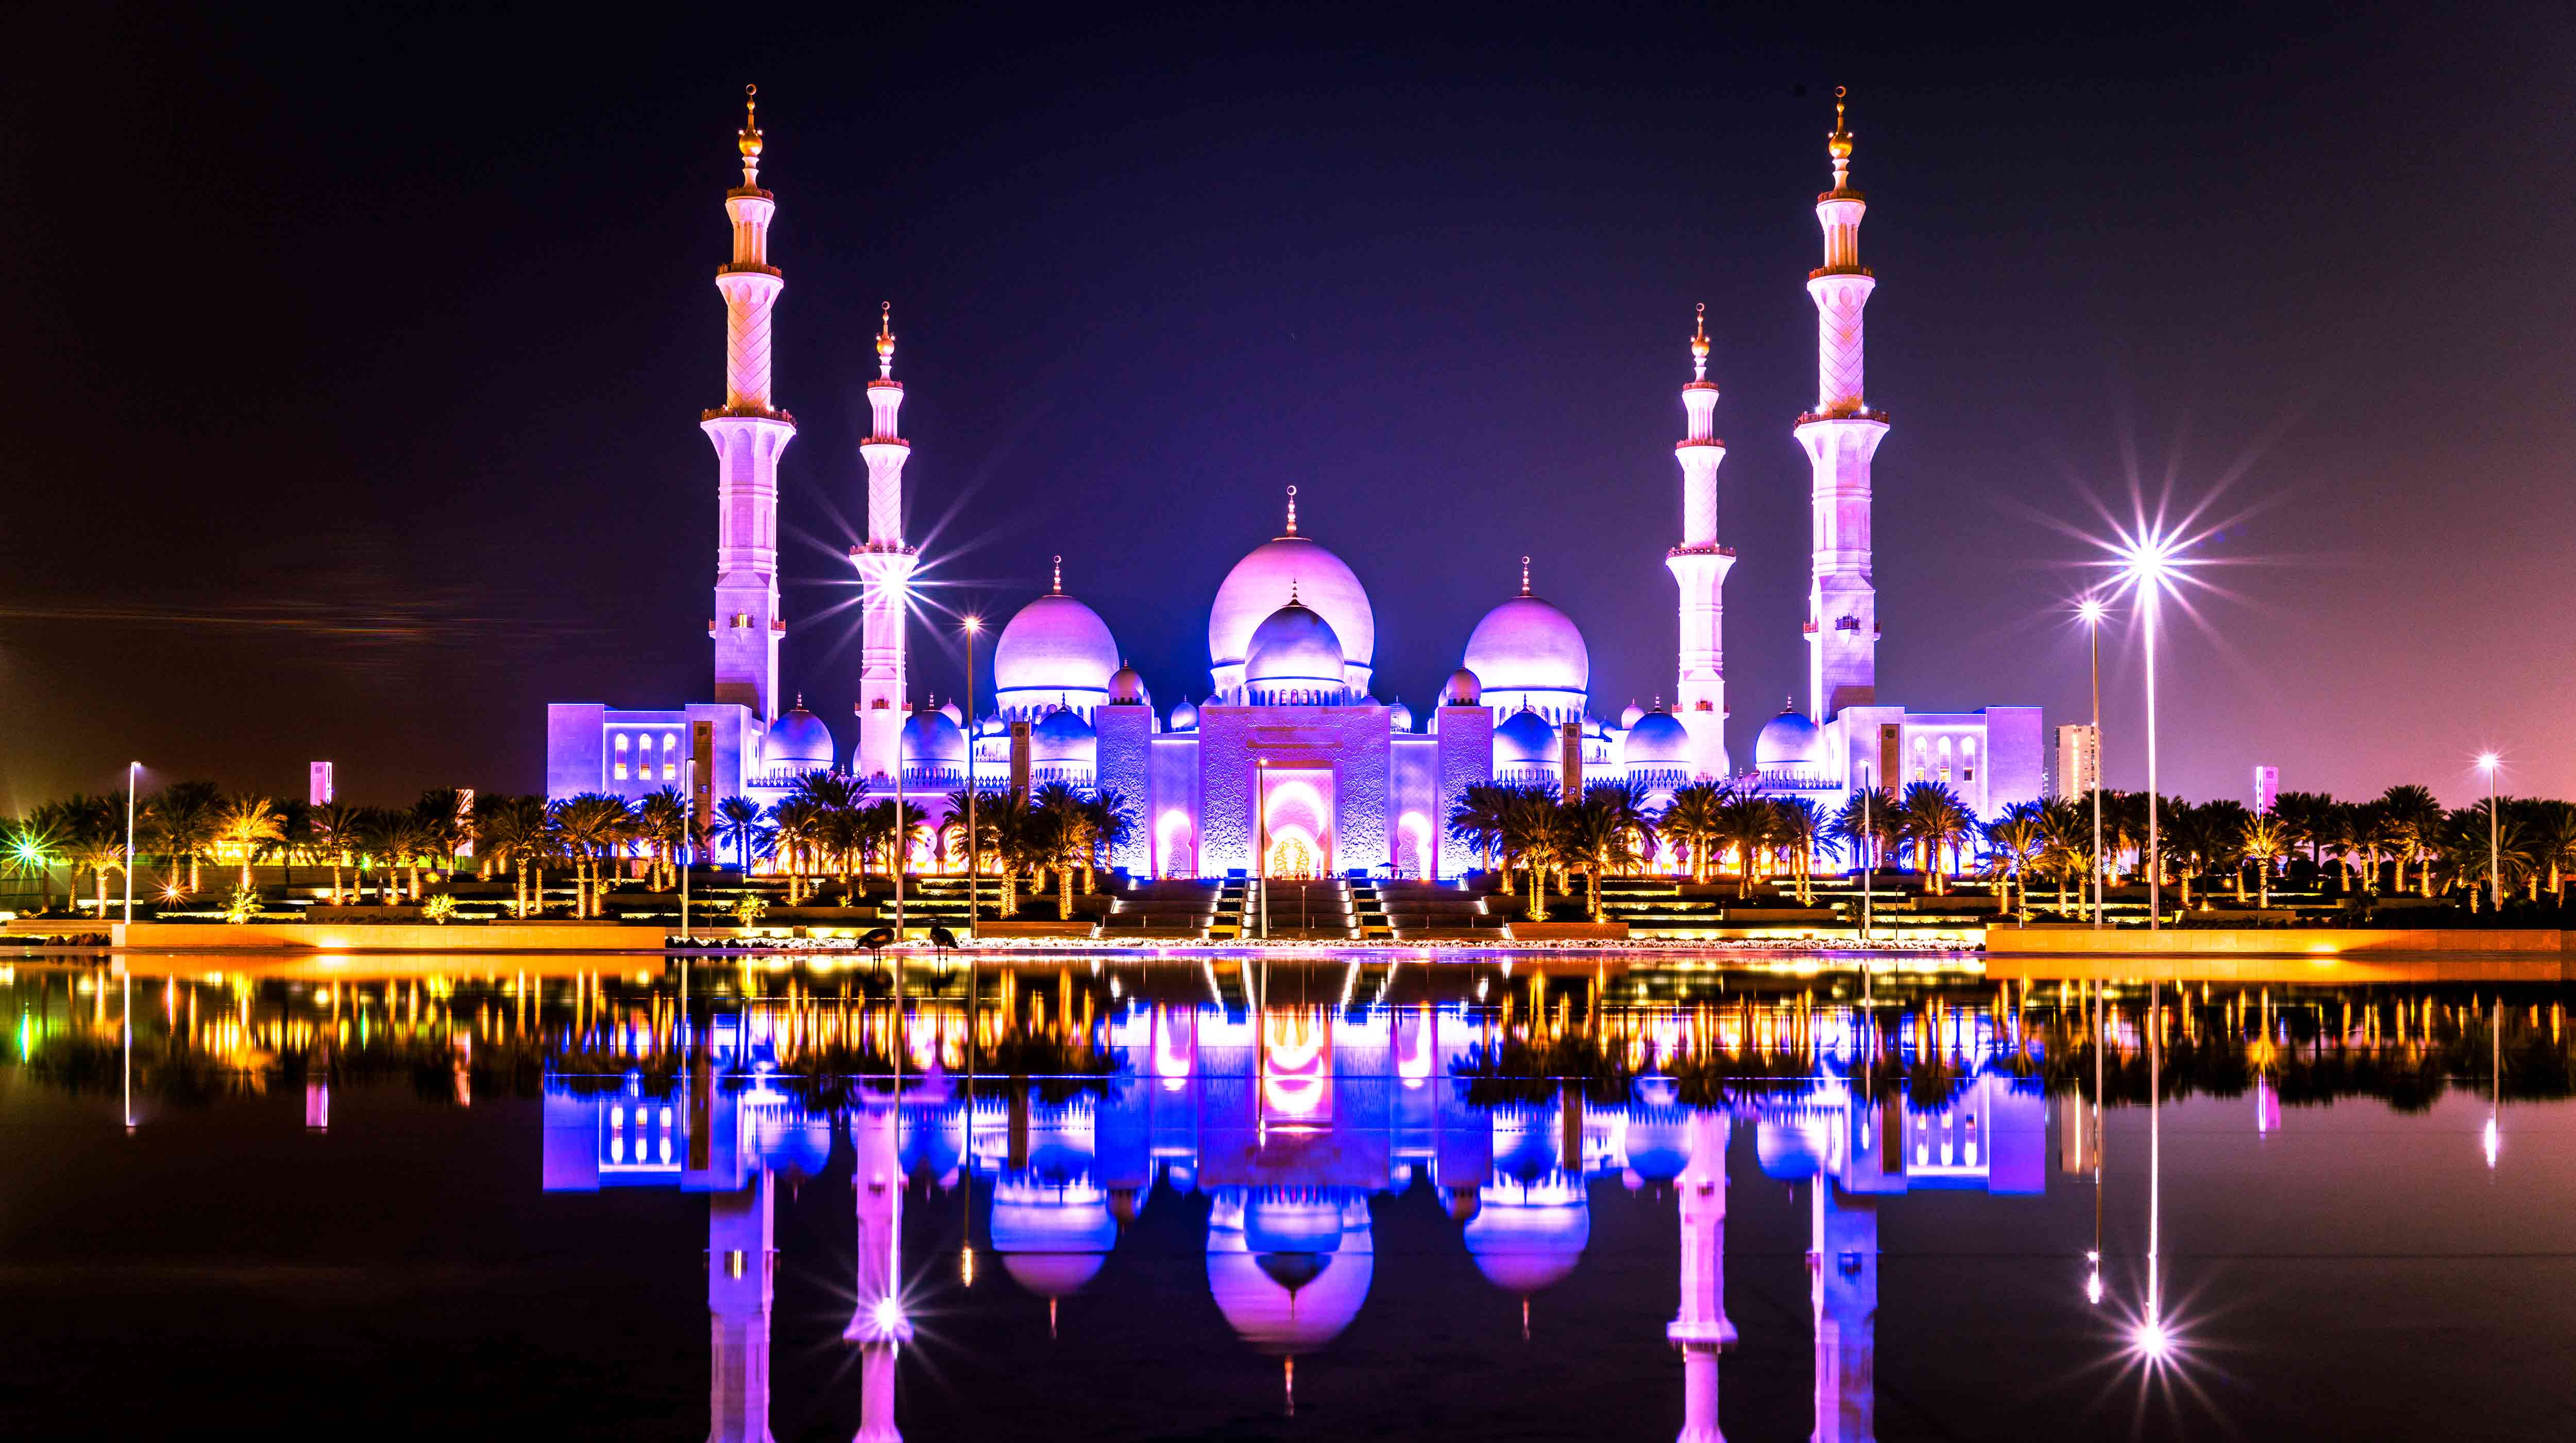 מסגד שייח' זאיד הגדול (Sheikh Zayed Grand Mosque)